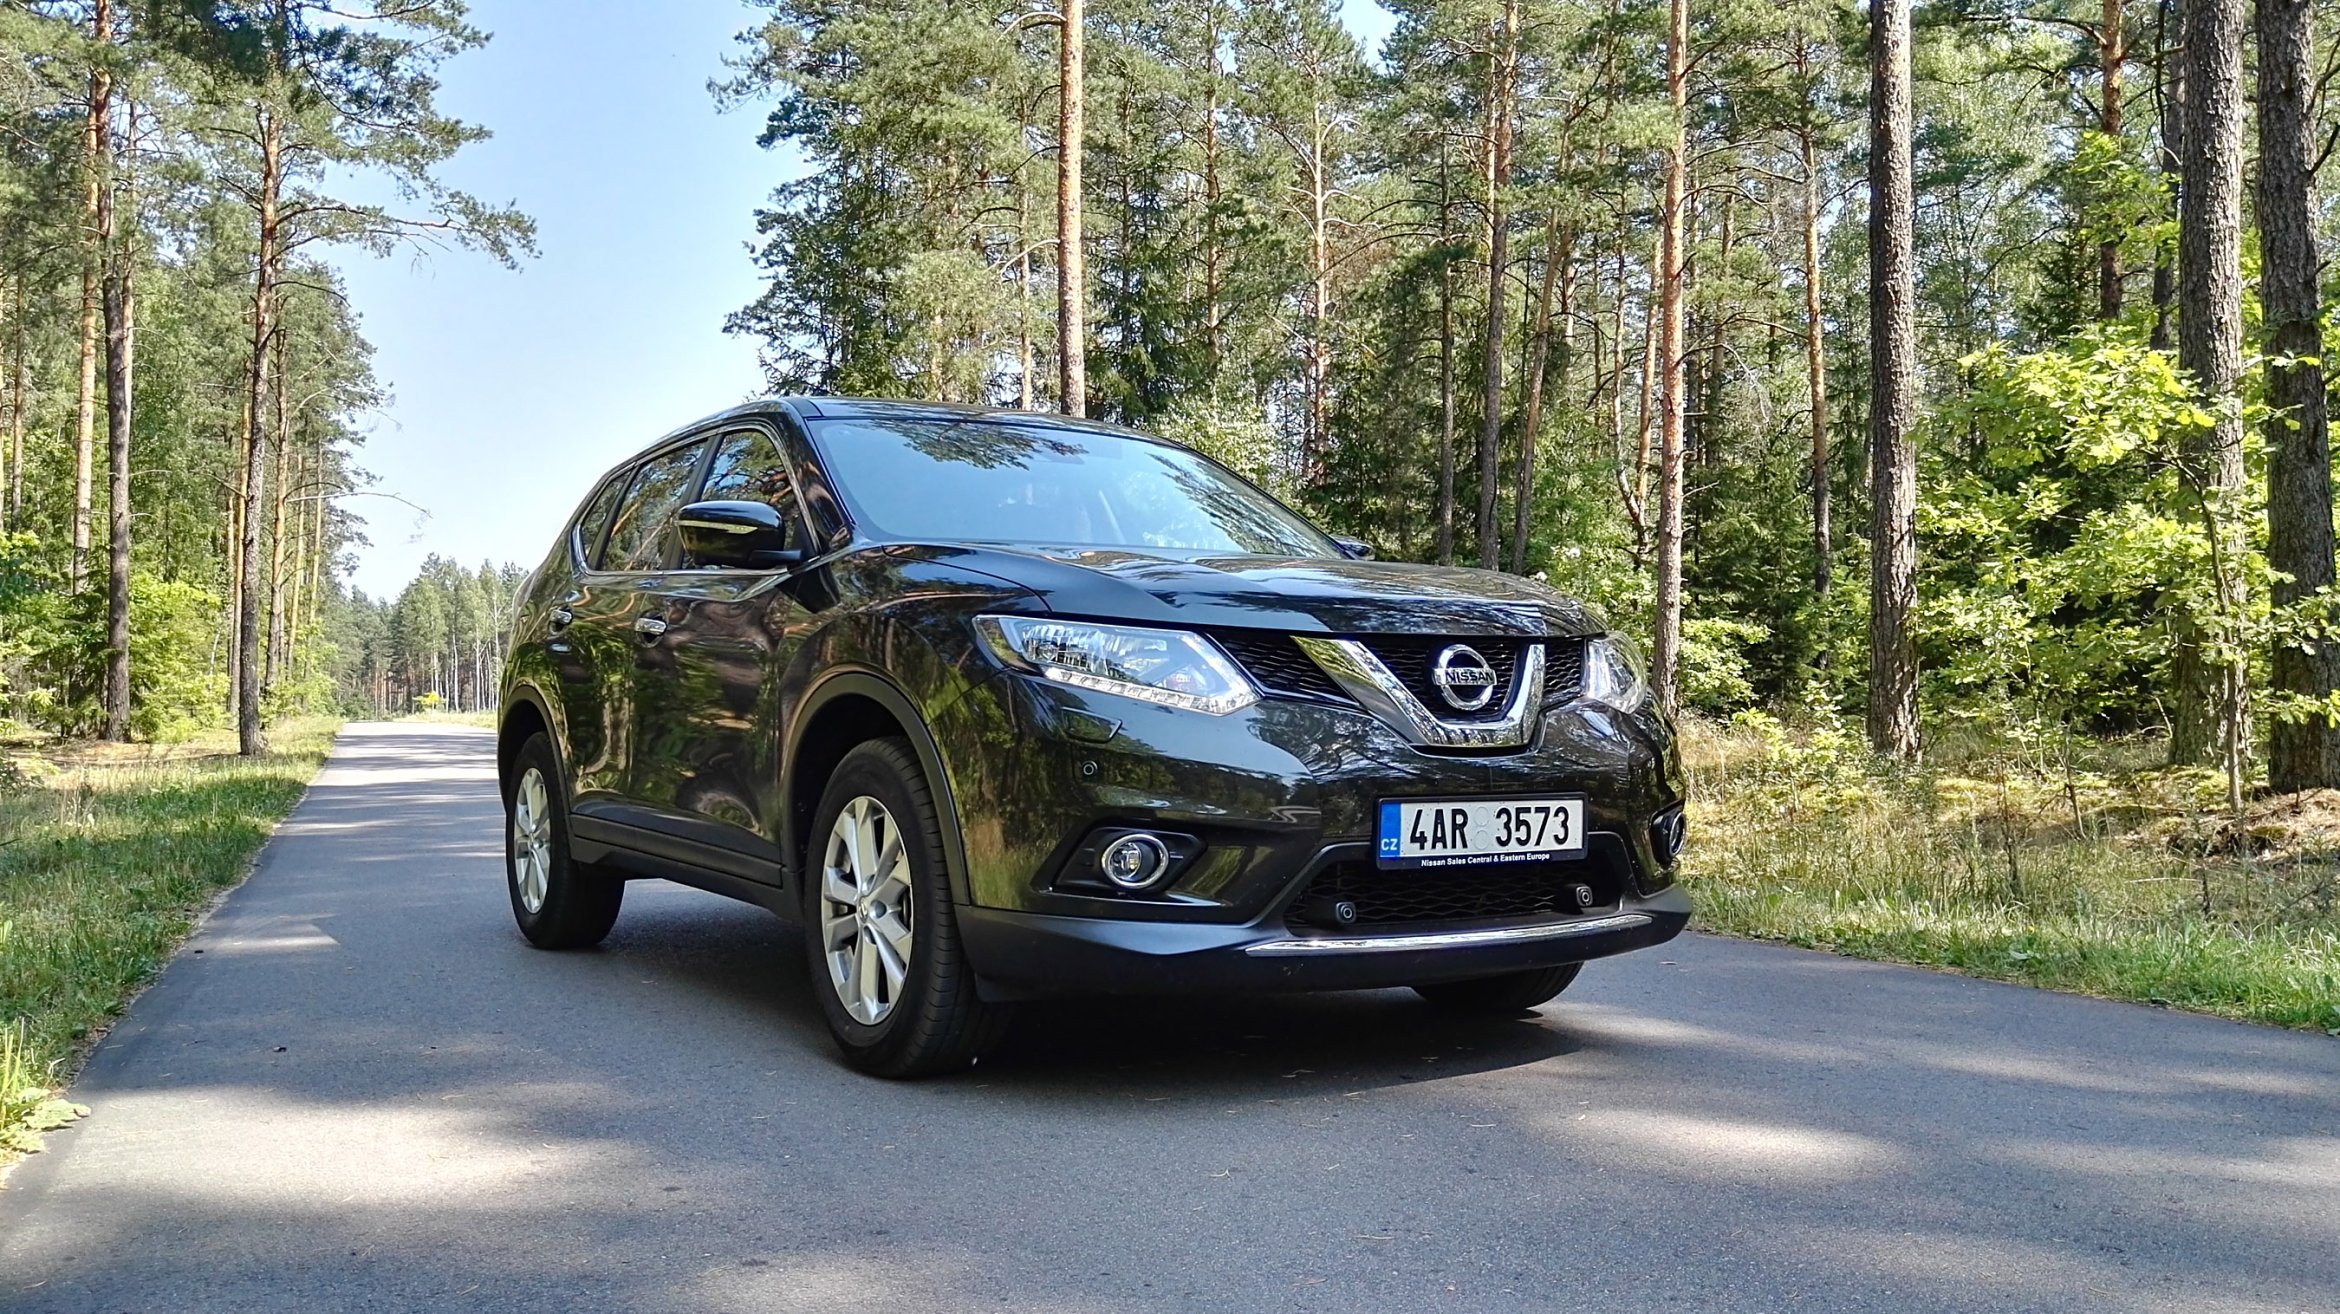 Diabelsko Wygodny Nissan X-Trail. Sprawdzamy, Czy "Suv Roku" Zasługuje Na To Miano | Natemat.pl